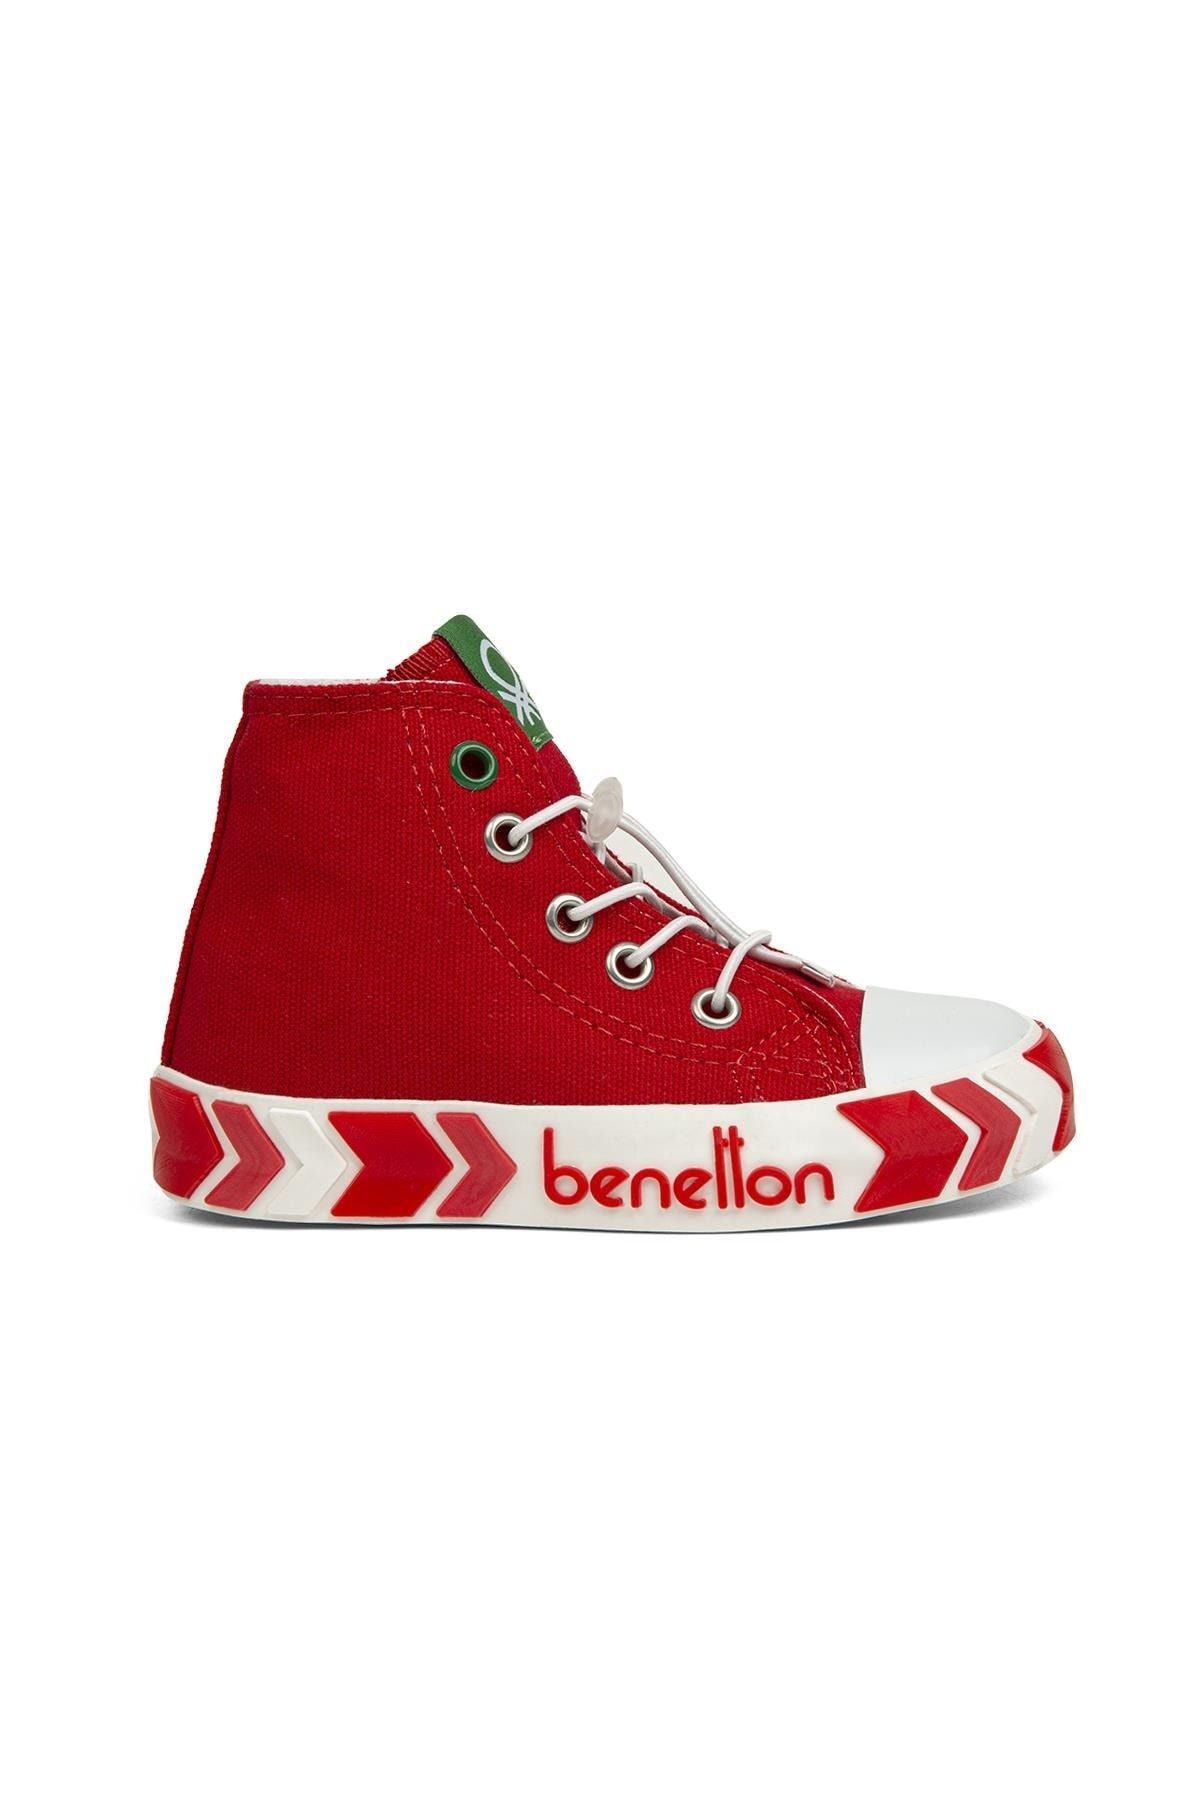 Benetton ® | Bn-30646 - 3394 Kırmızı - Çocuk Spor Ayakkabı